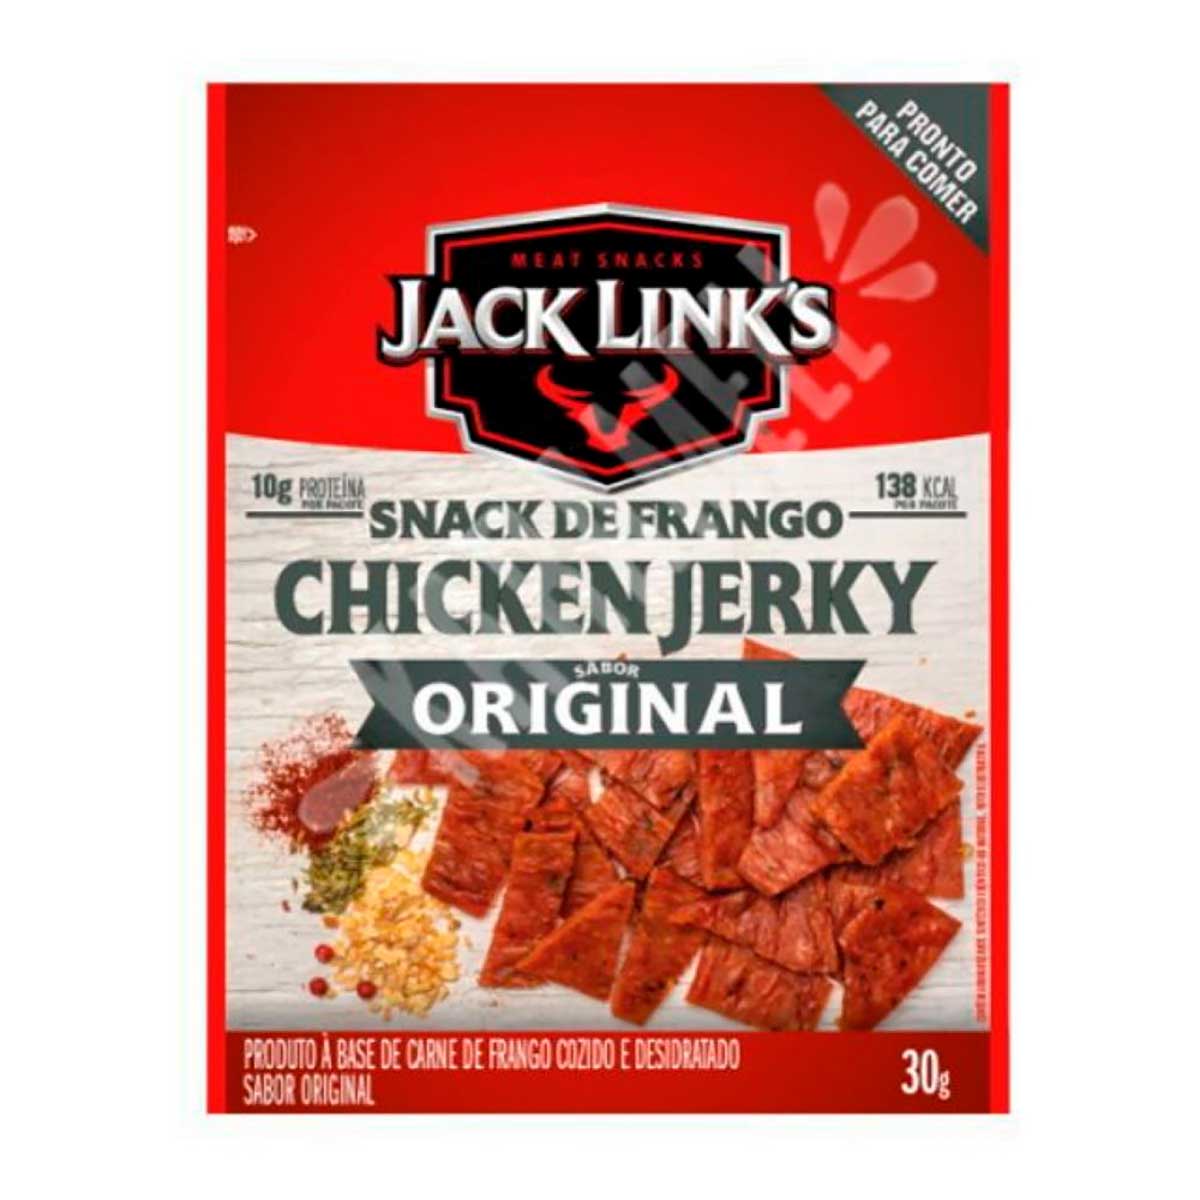 chicken-jerky-original-jack-links-30-g-1.jpg